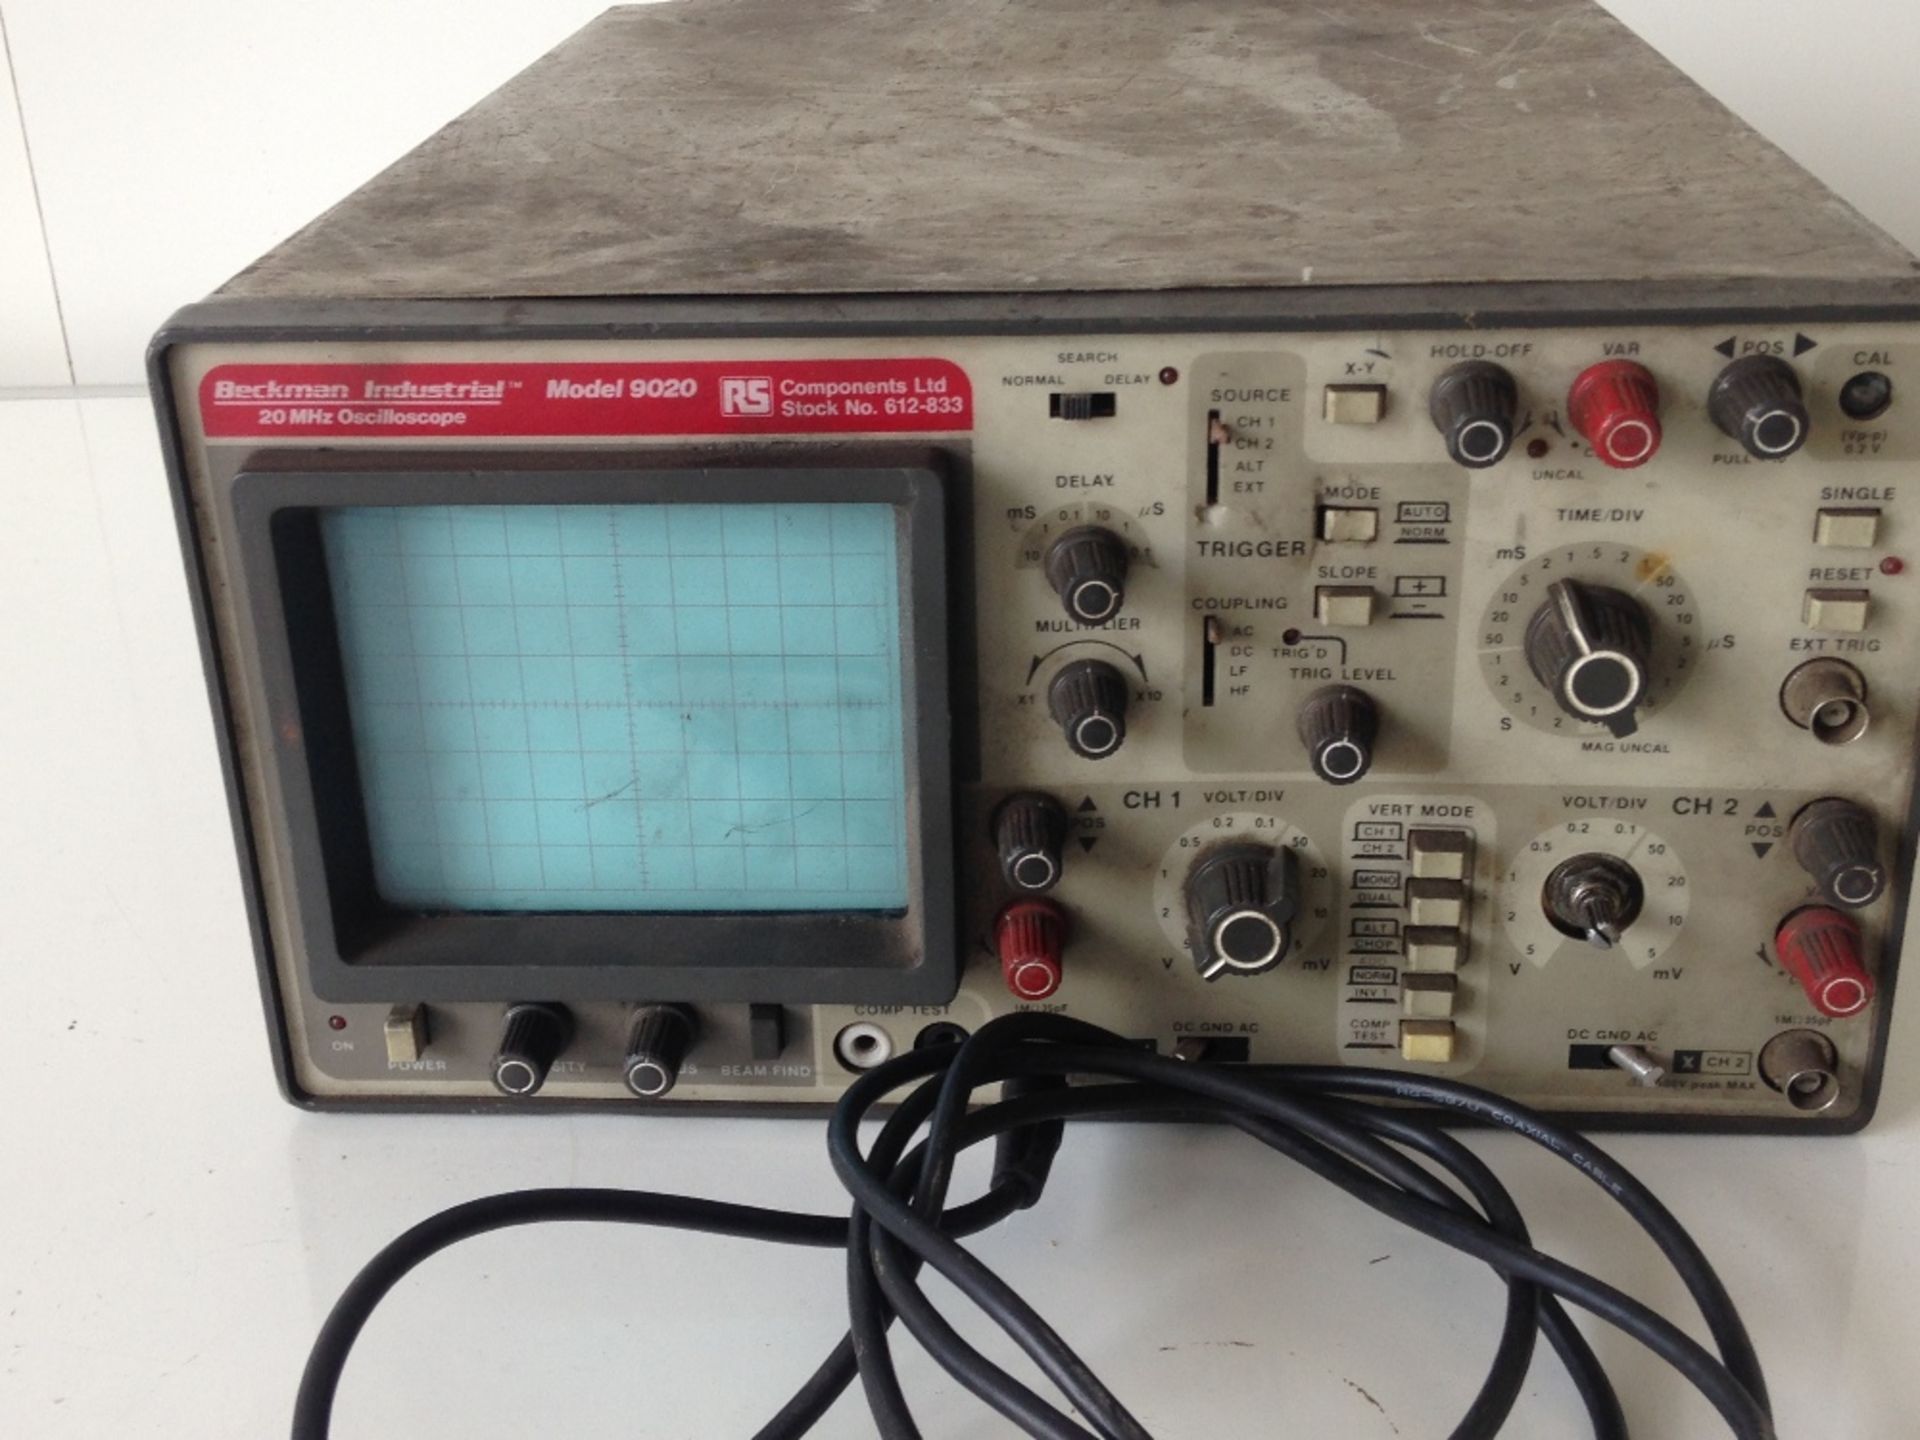 Beckman Industrial 20 HZ oscilloscope Model 9020 - Image 2 of 3